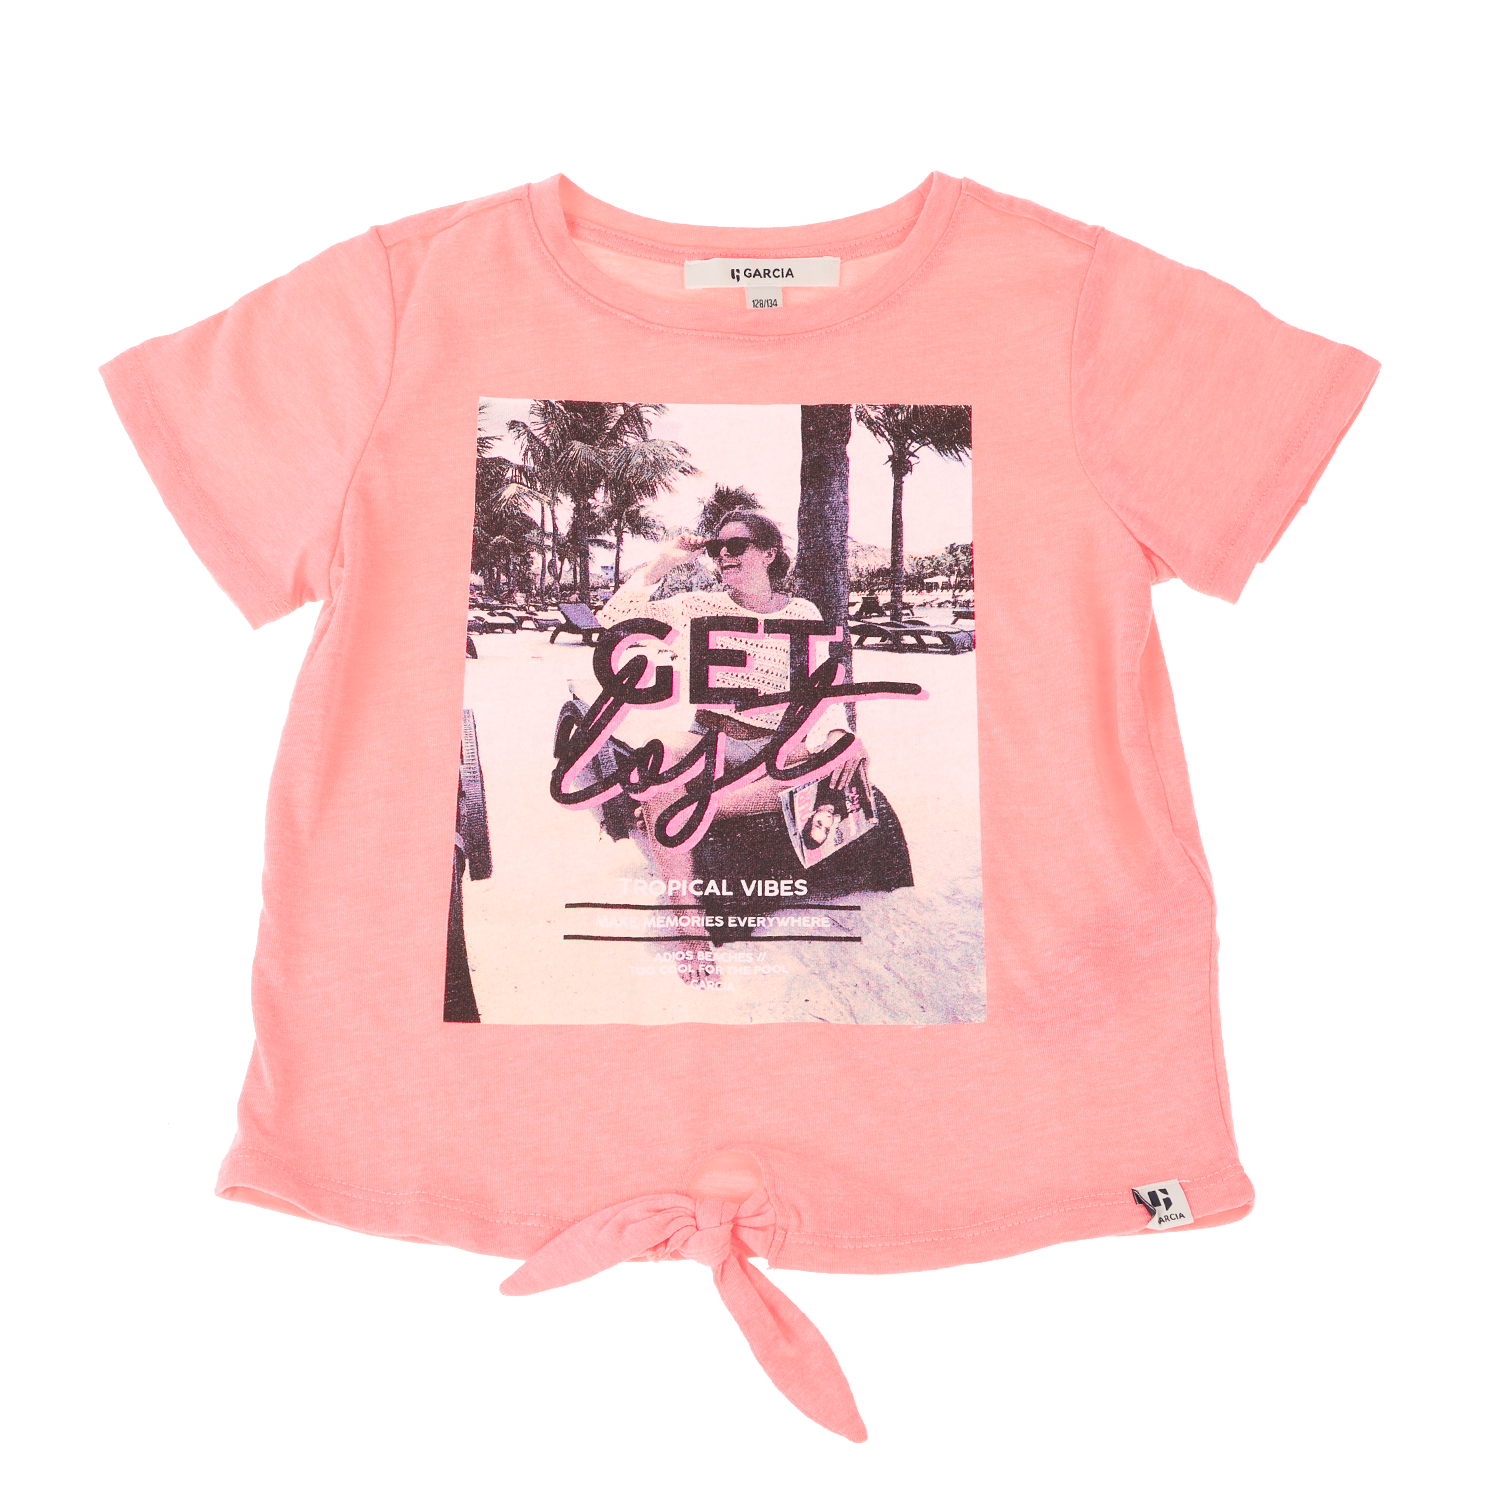 Παιδικά/Girls/Ρούχα/Μπλούζες Κοντομάνικες-Αμάνικες GARCIA JEANS - Παιδικό t-shirt για κορίτσια GARCIA JEANS ροζ